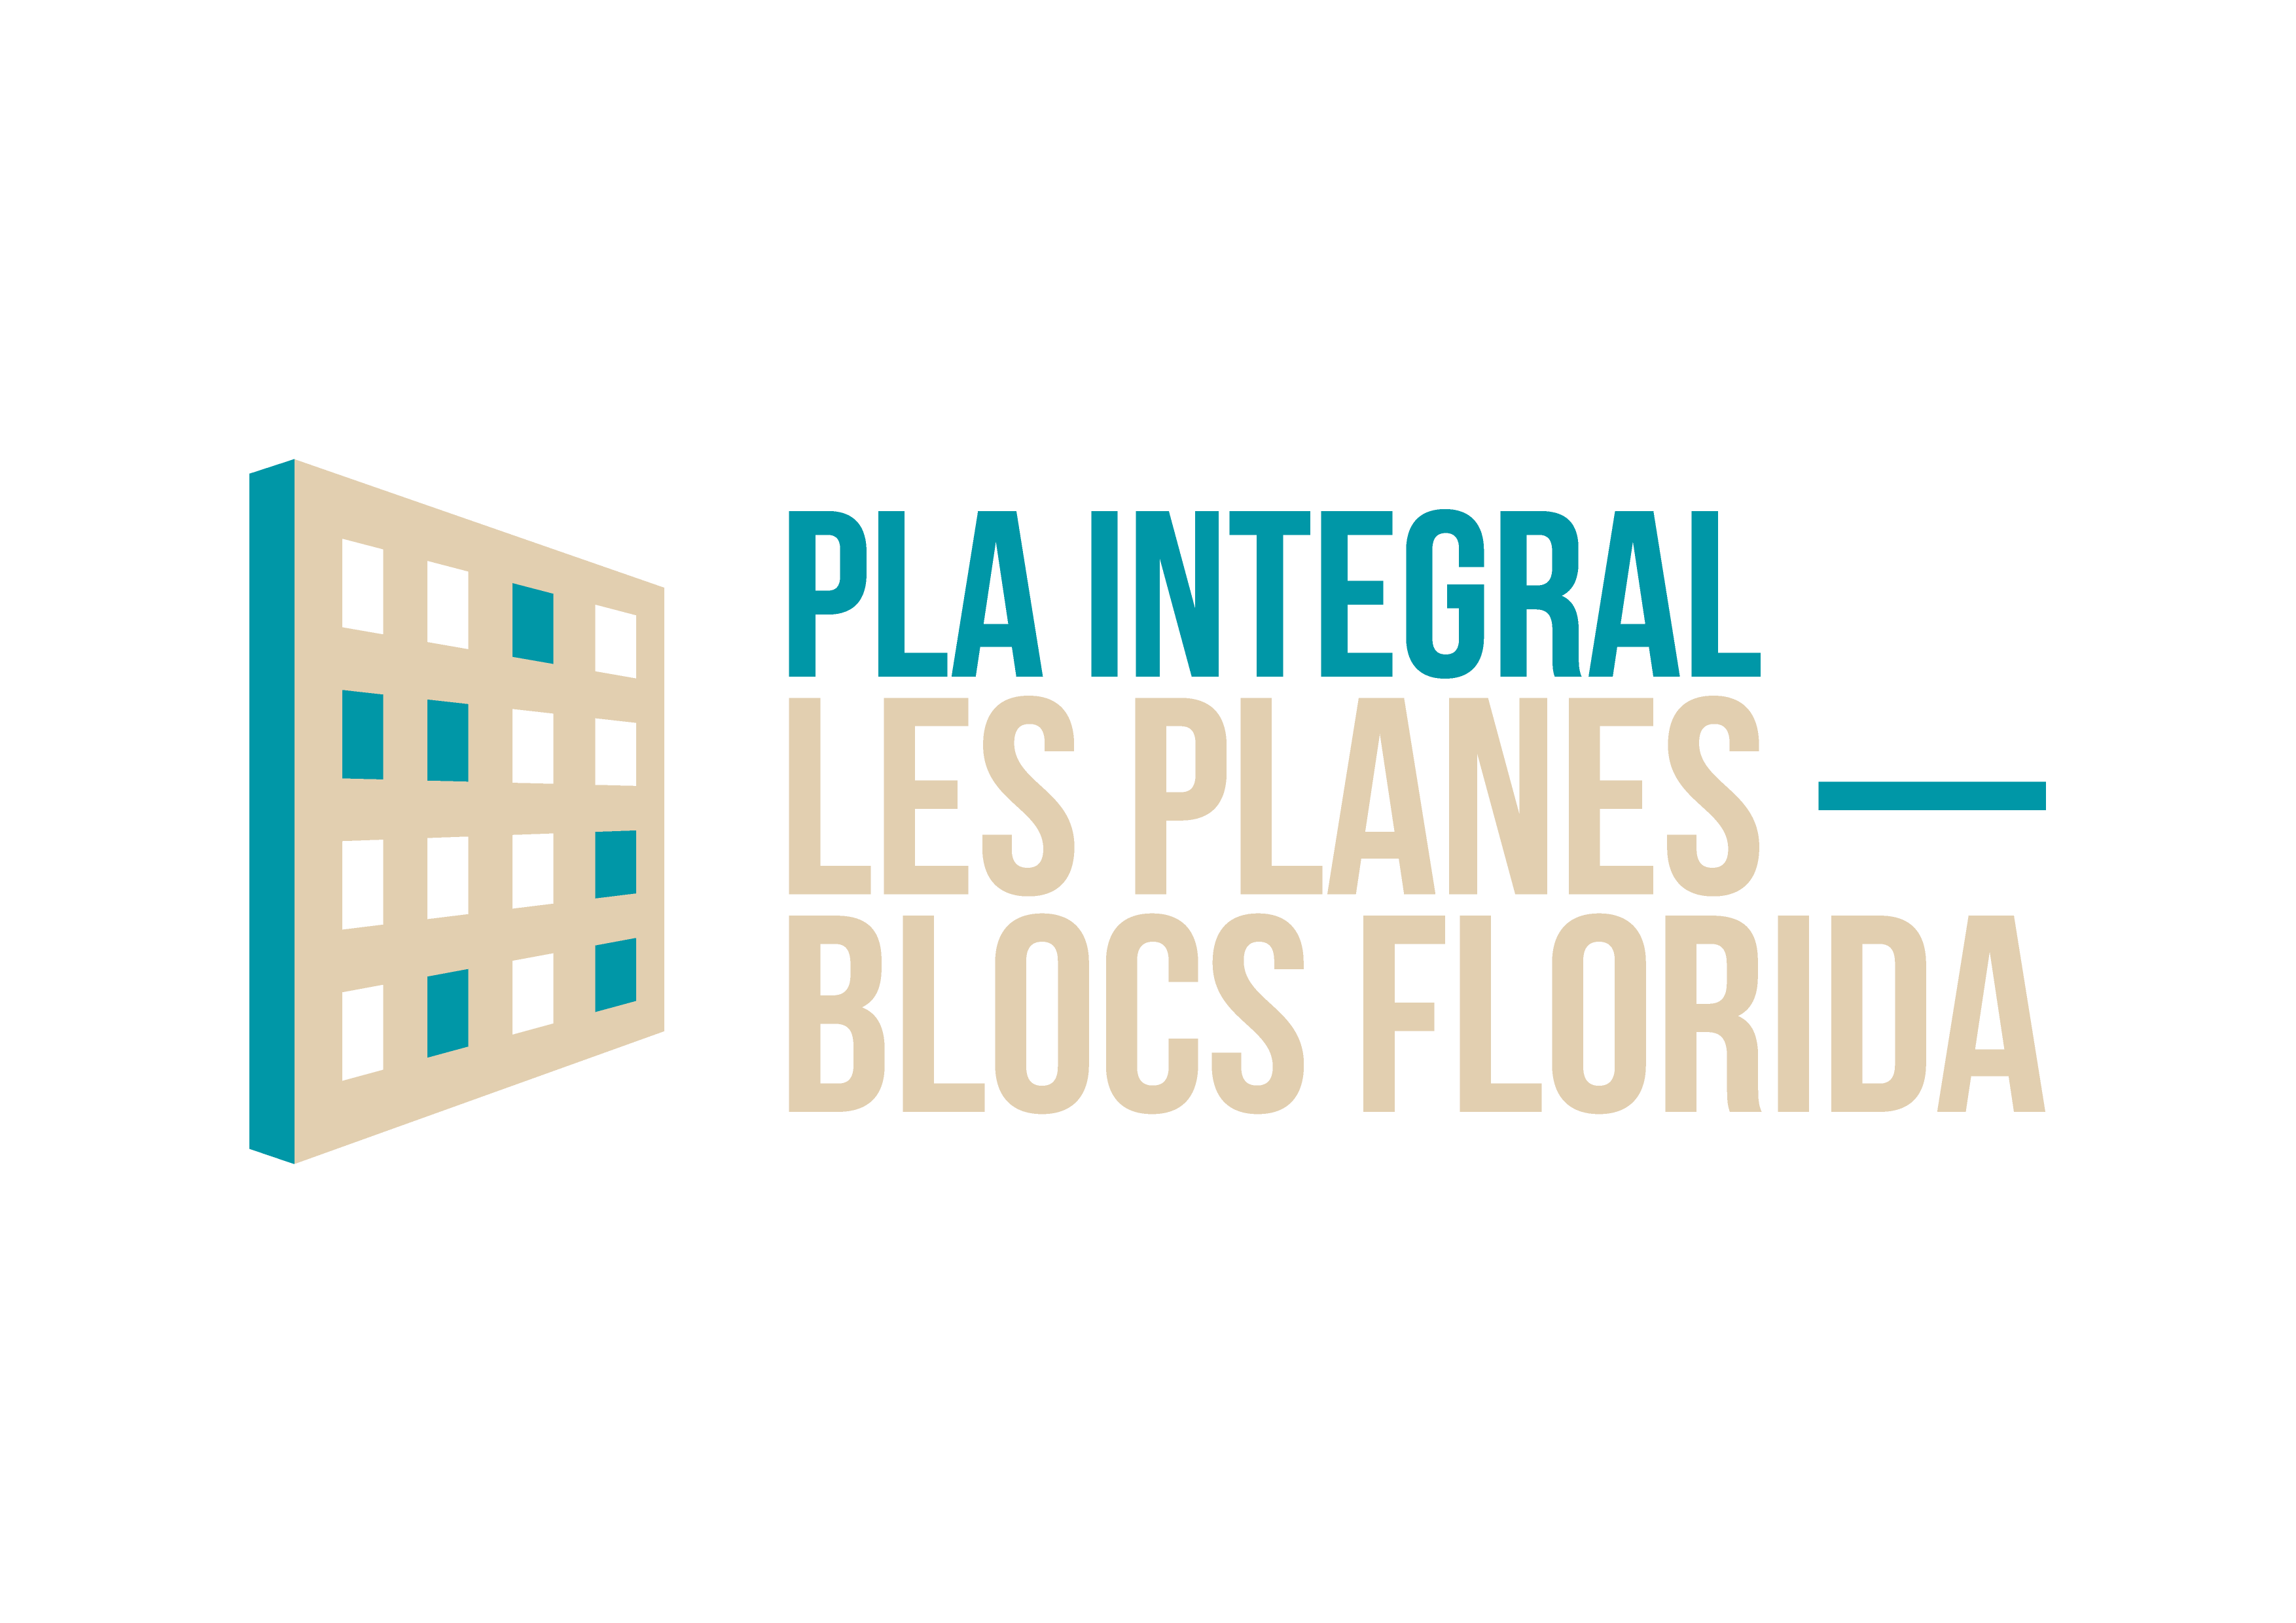 Pla de Regeneració Urbana Integral Les Planes - Blocs Florida